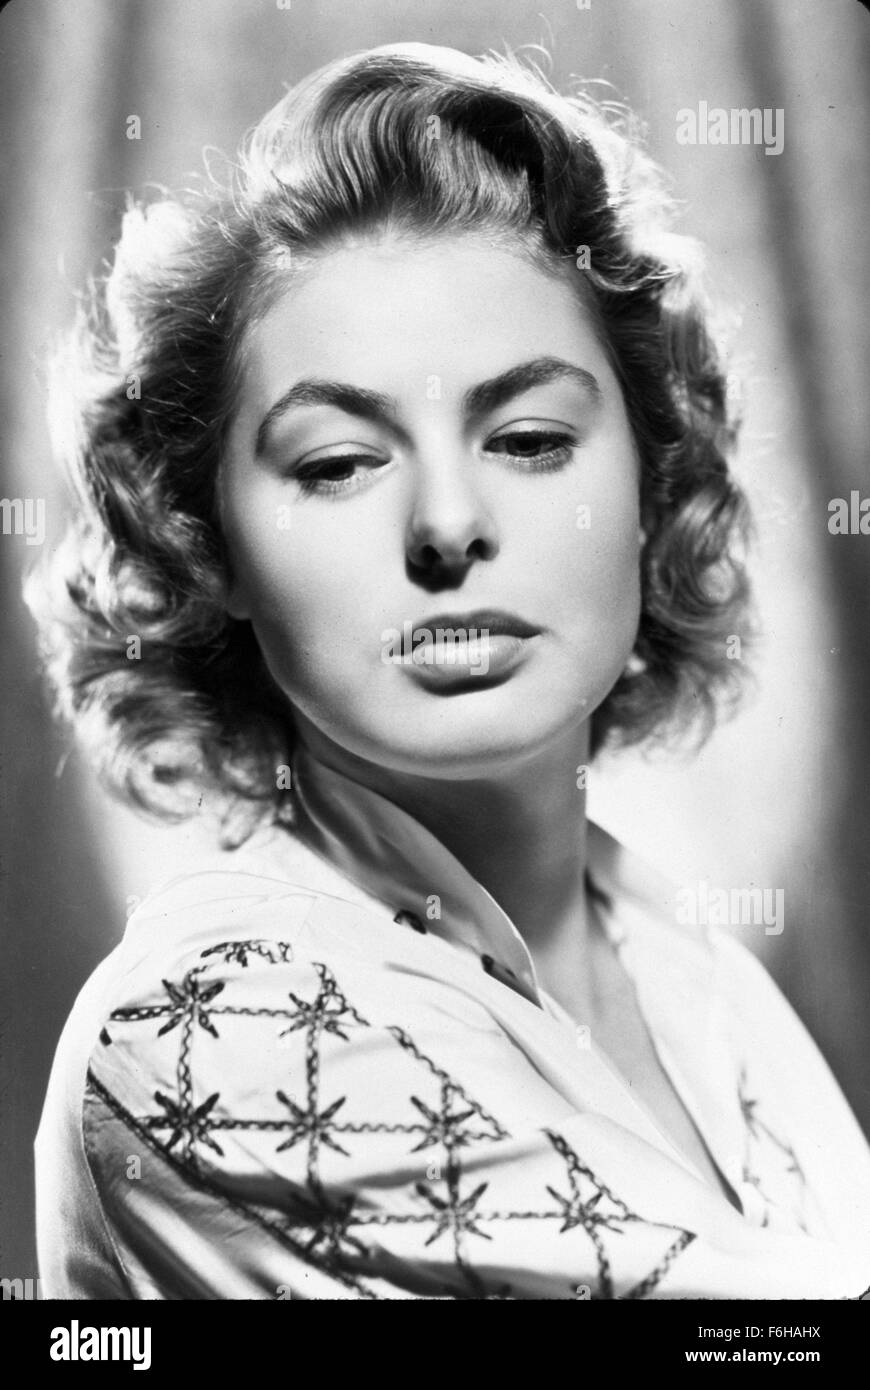 1942, le titre du film : CASABLANCA, Réalisateur : Michael Curtiz, Studio : WARNER, Photo : Ingrid Bergman. (Crédit Image : SNAP) Banque D'Images